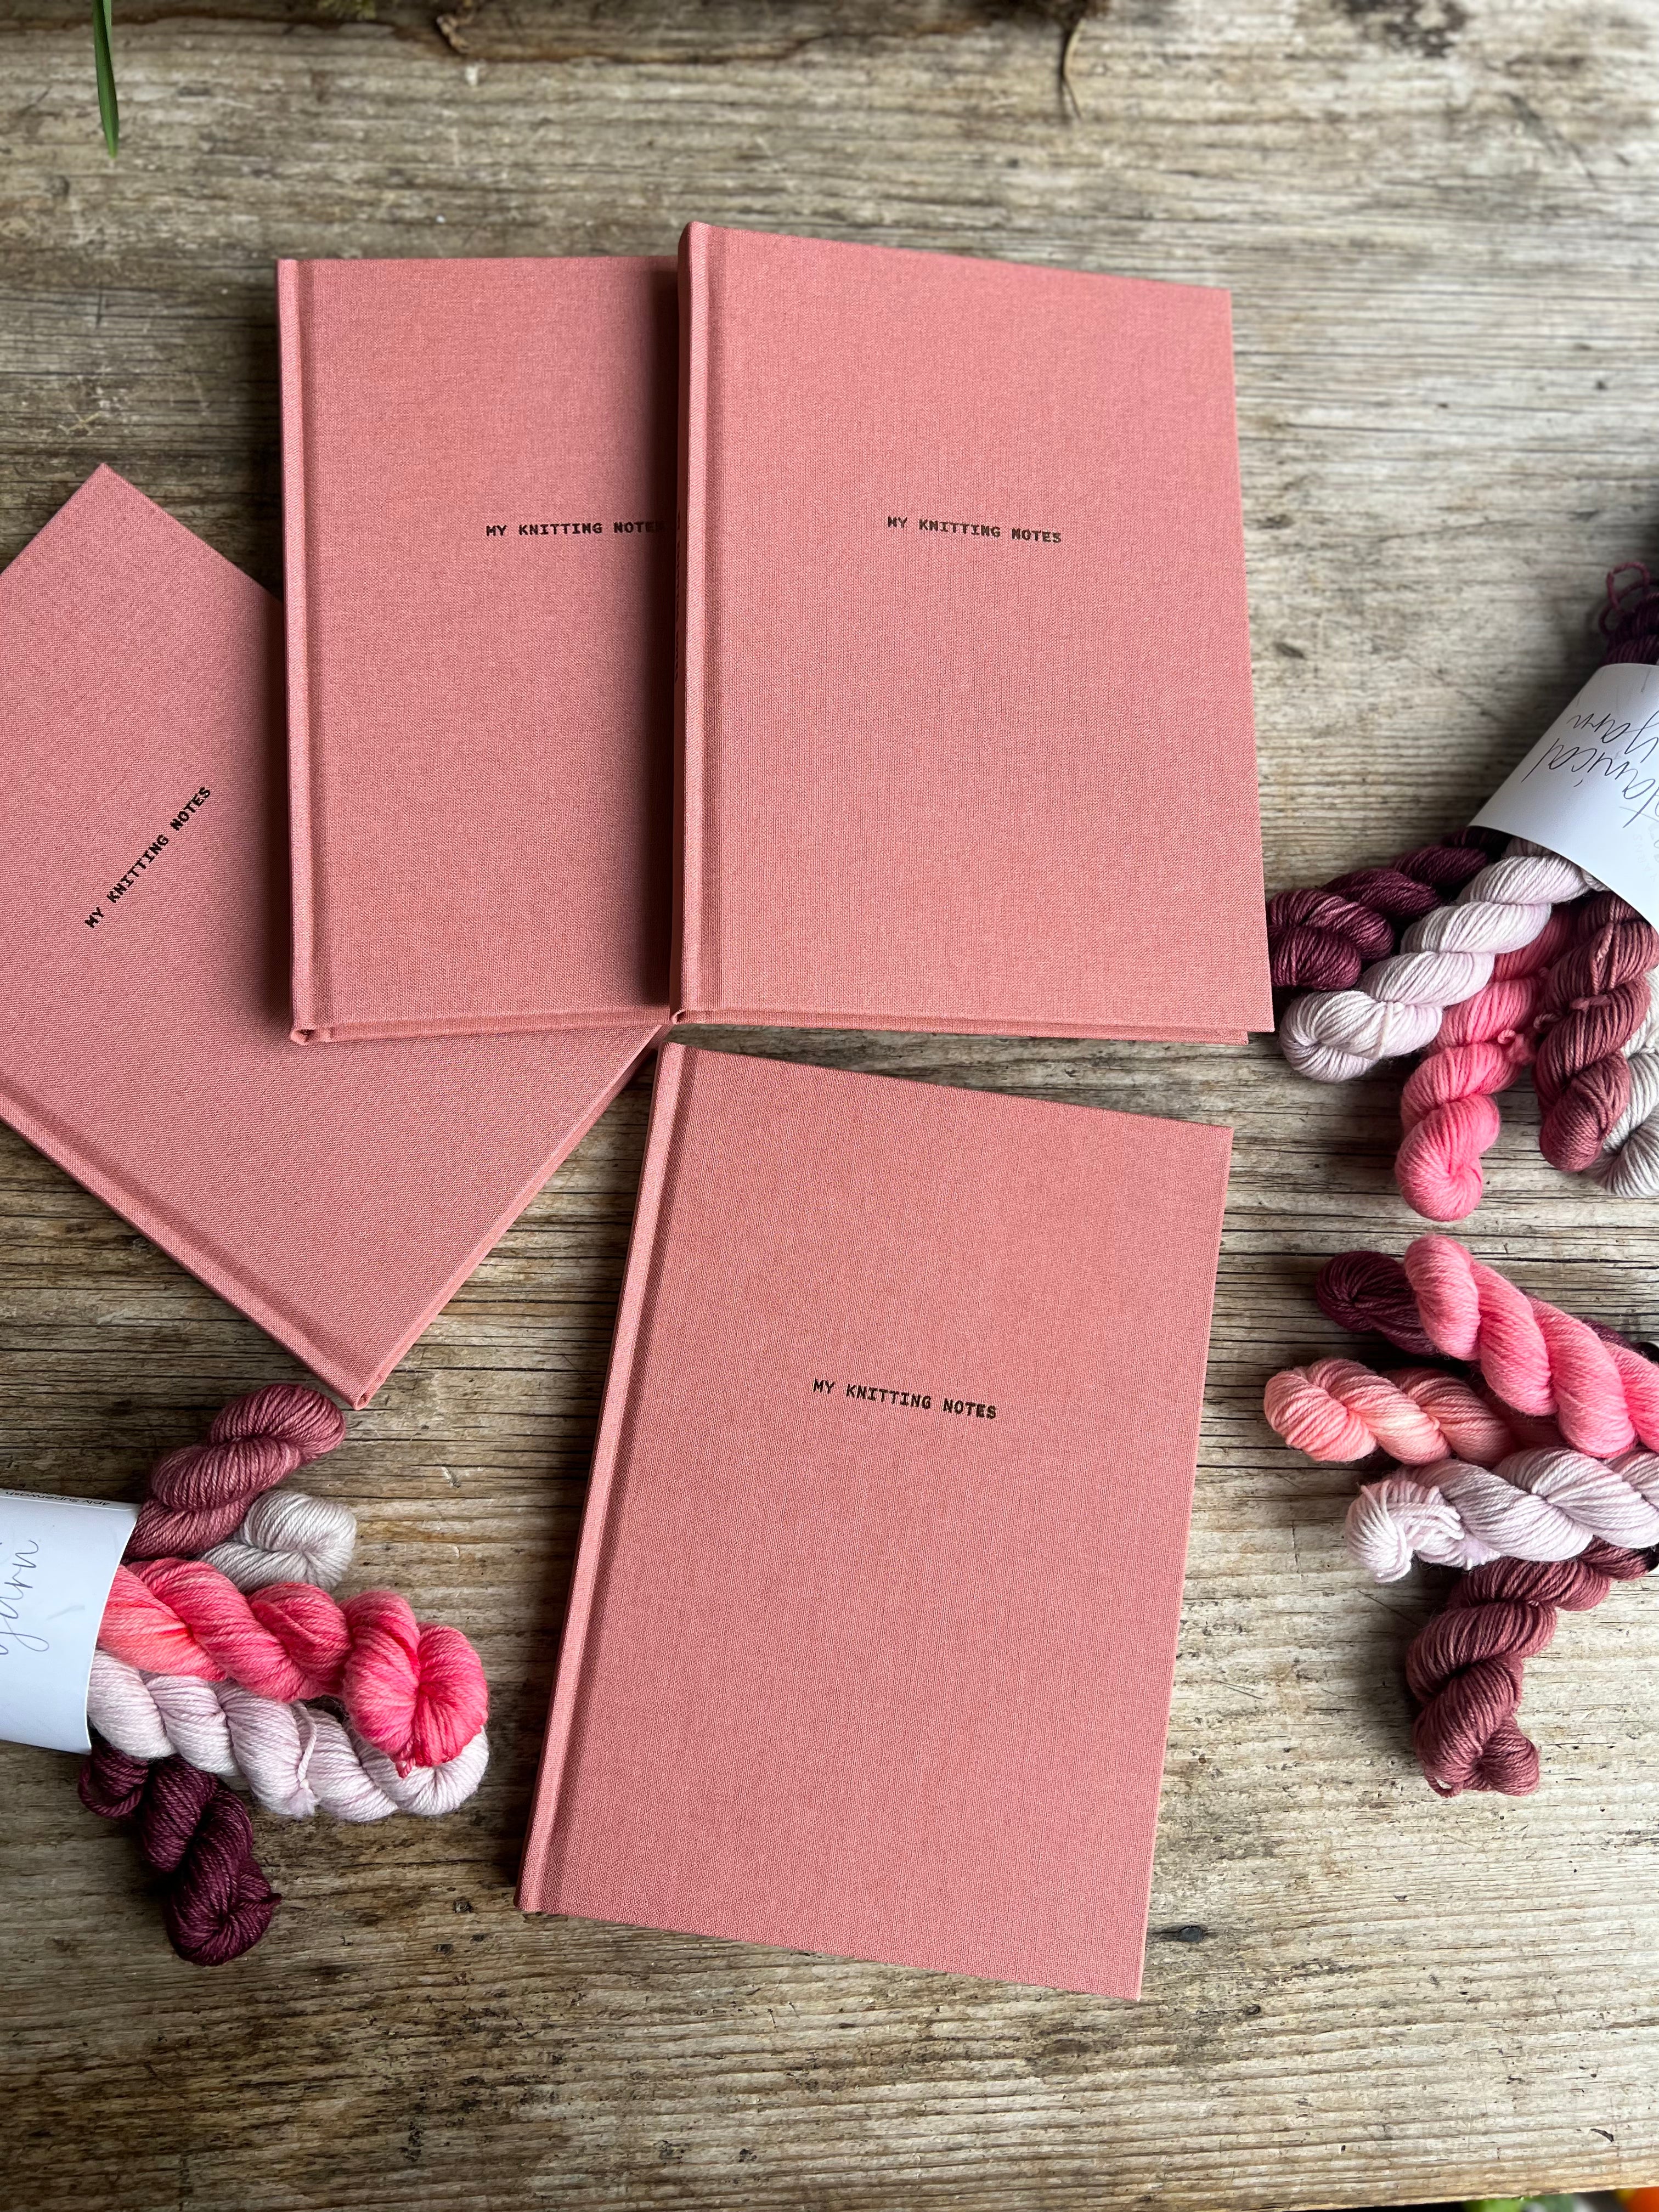 Laine Publishing knitting notes pink